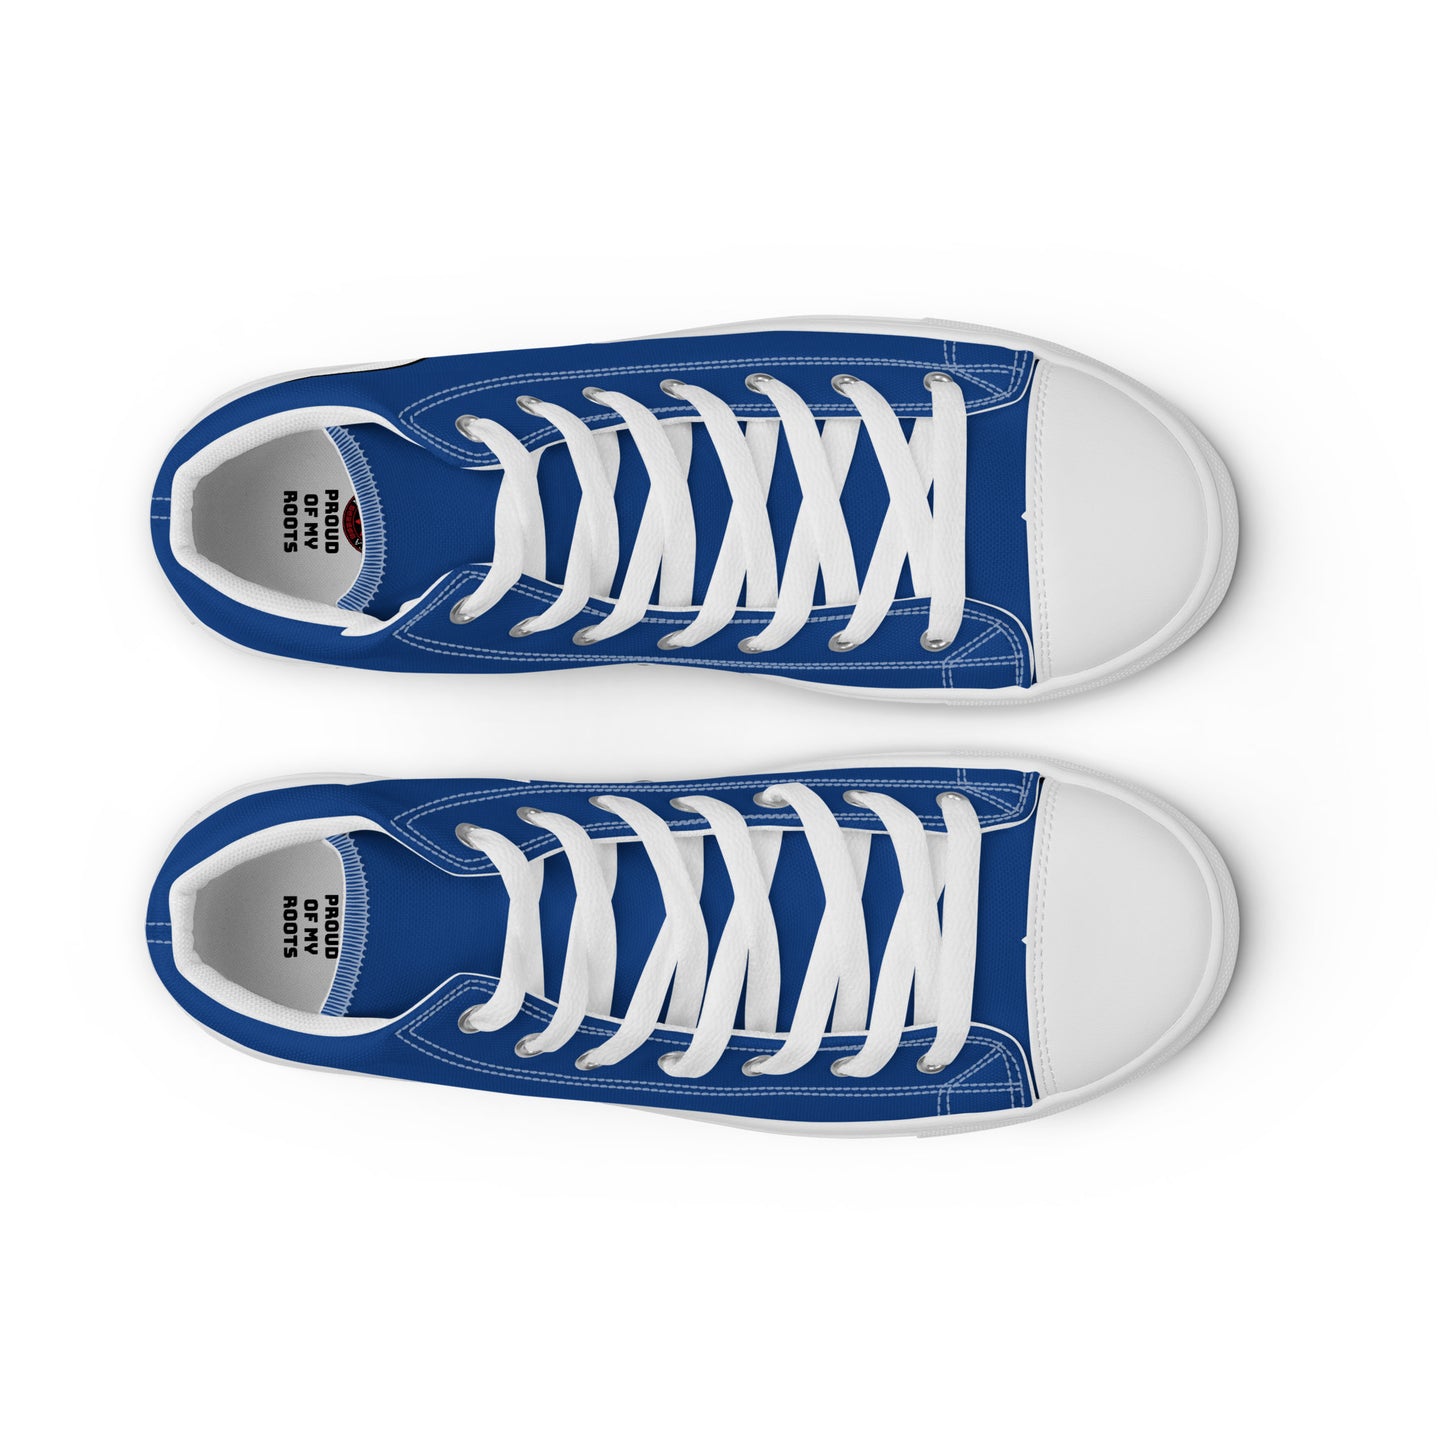 Paraguay - Men - Blue - High top shoes